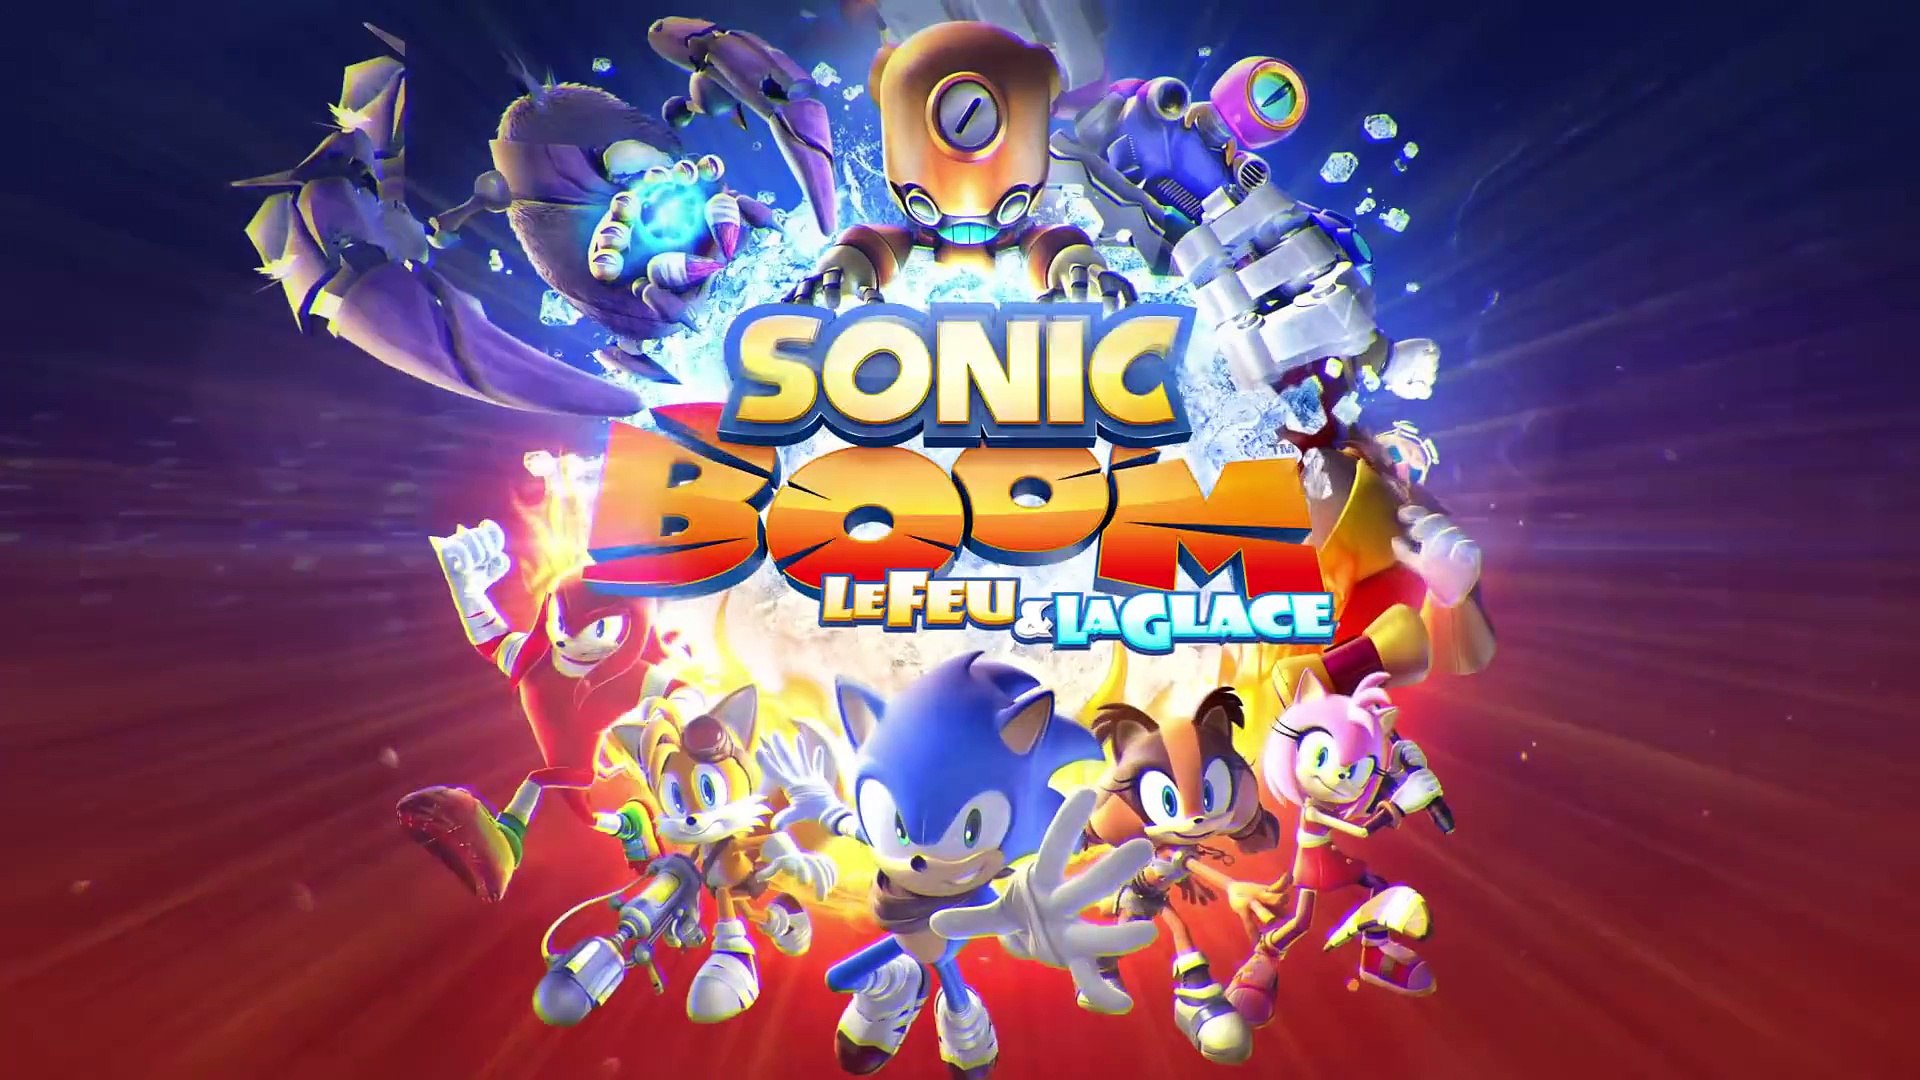 Sonic Boom le Feu et la Glace - Bande-annonce (Nintendo 3DS) - Vidéo  Dailymotion